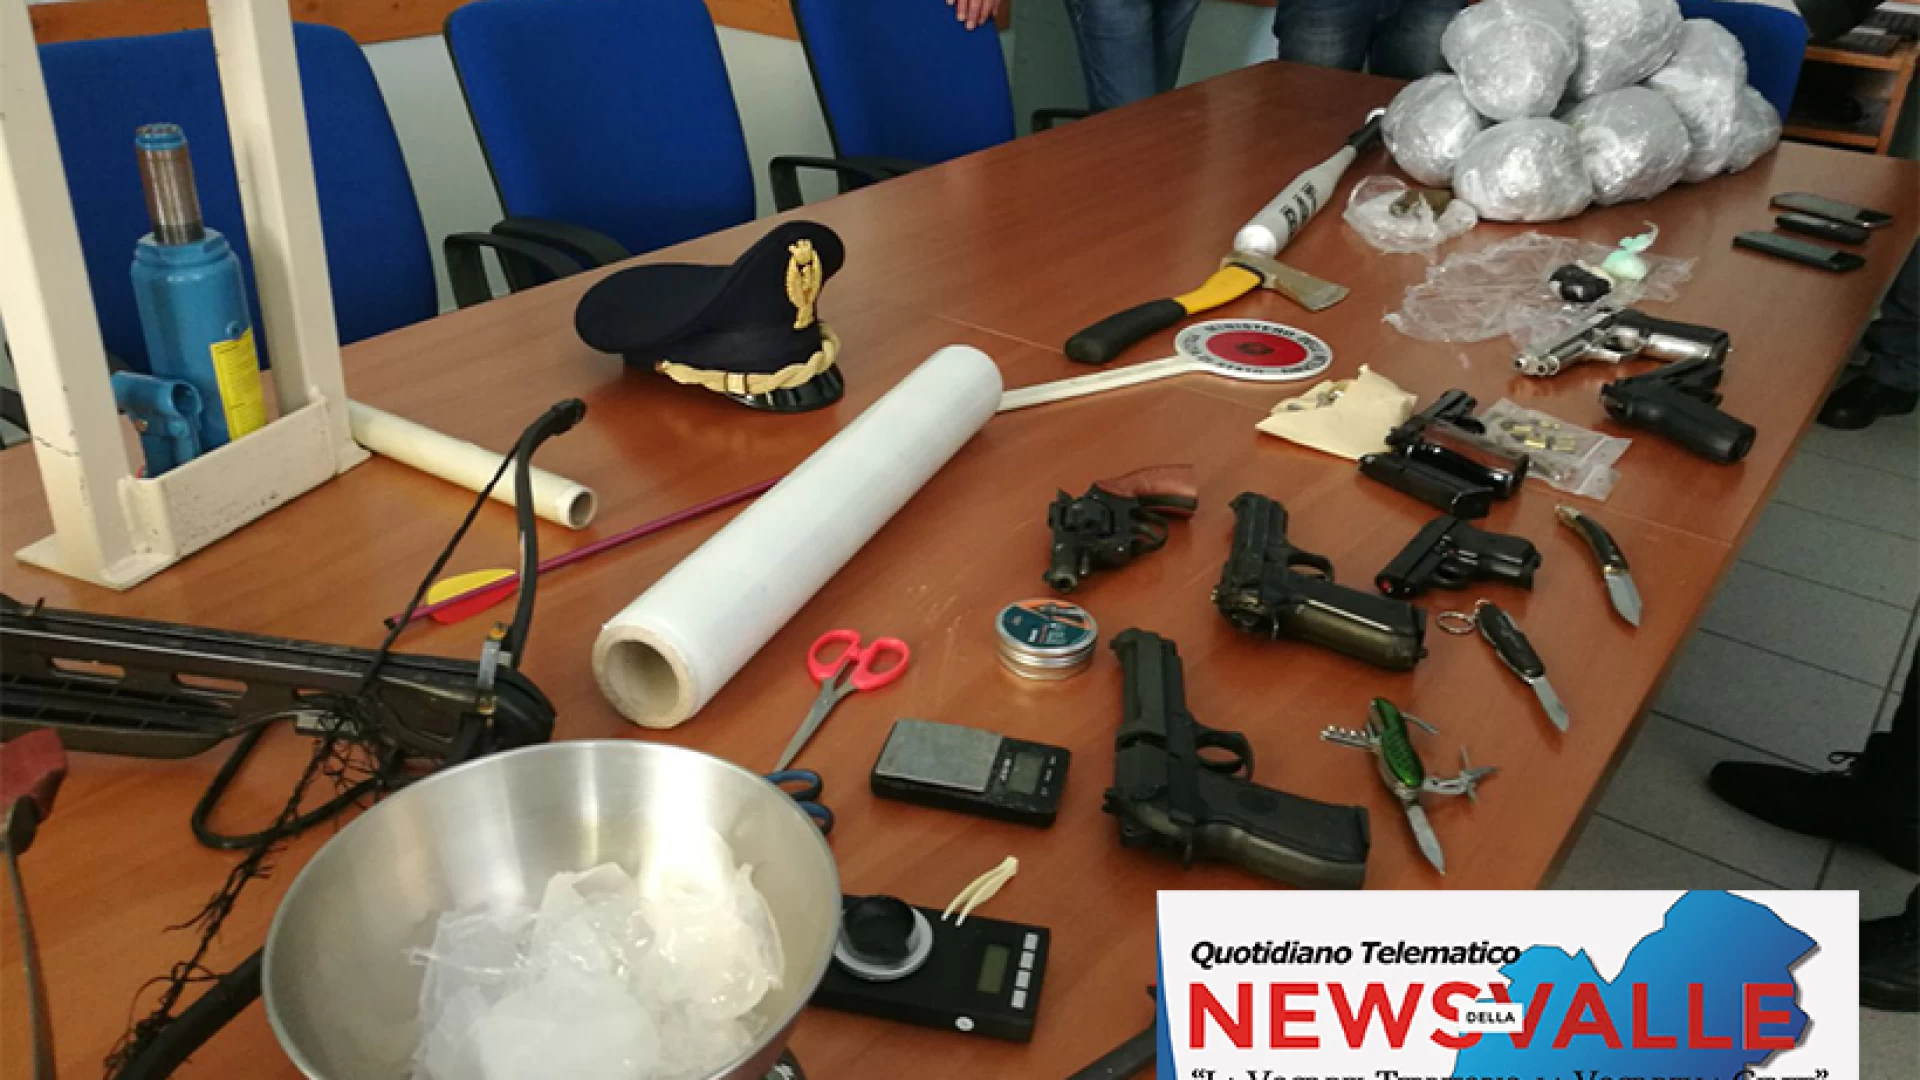 Isernia: smantellato laboratorio della droga in uno scantinato della città. La Polizia arresta due giovani della provincia di Isernia. Sequestrato arsenale di armi.